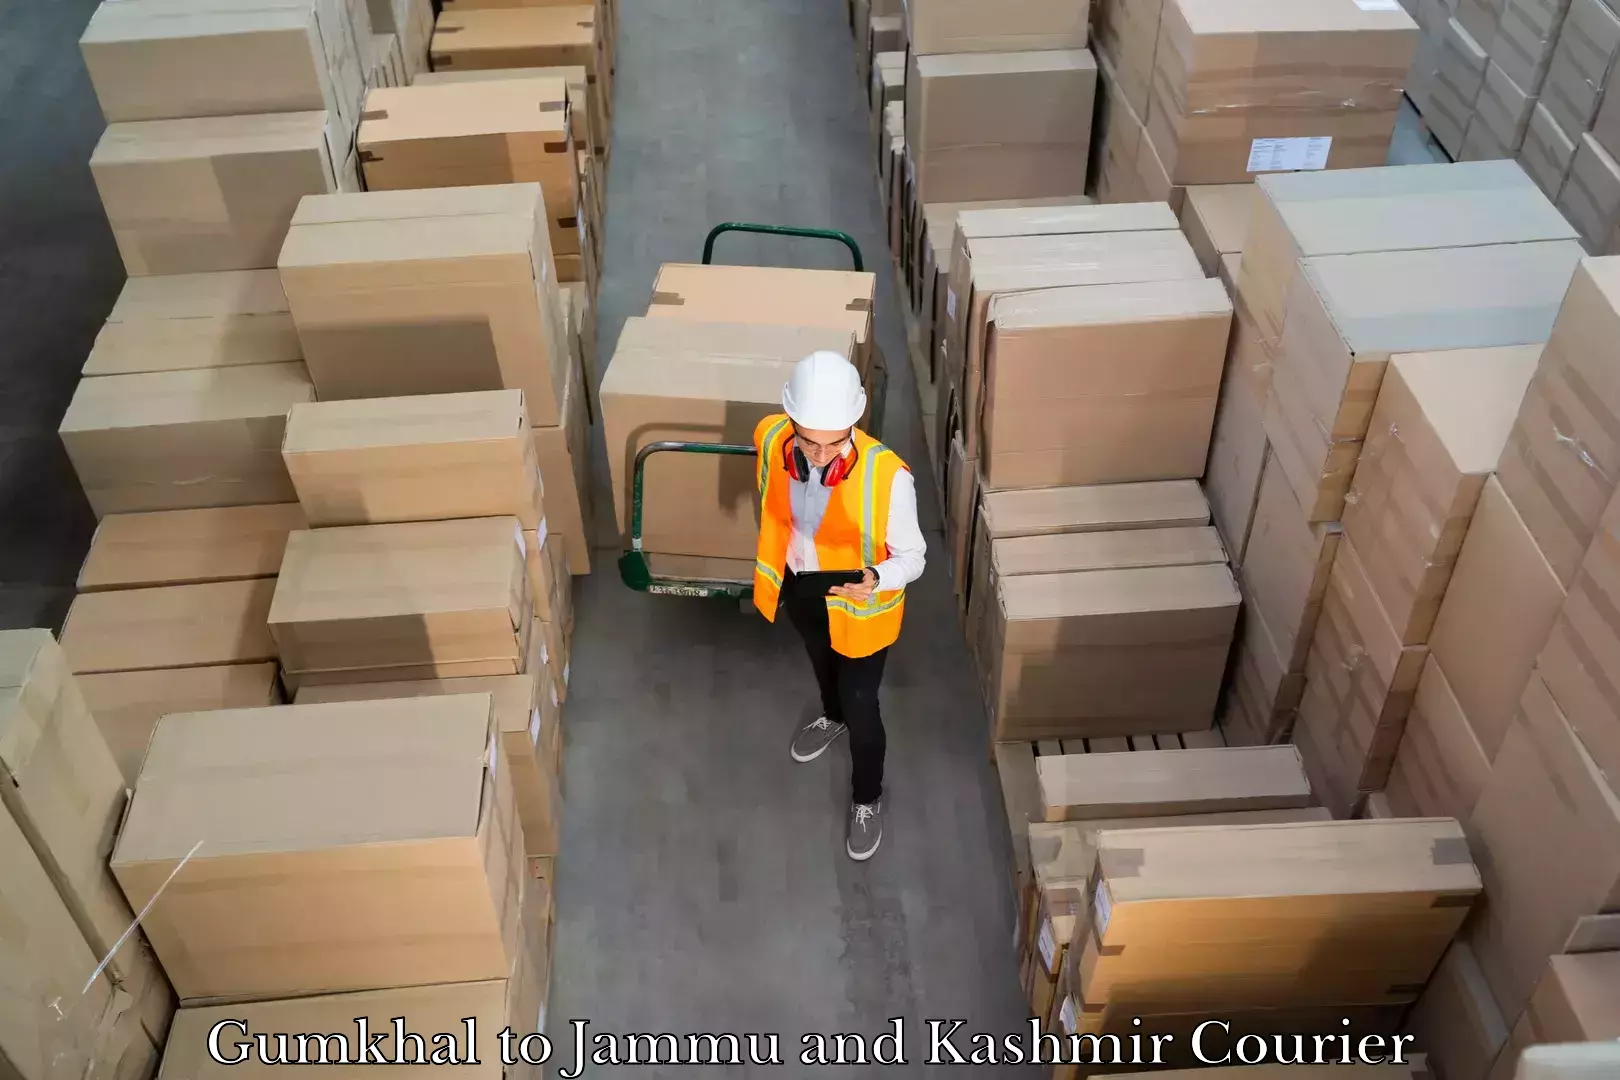 Baggage delivery technology Gumkhal to Kishtwar